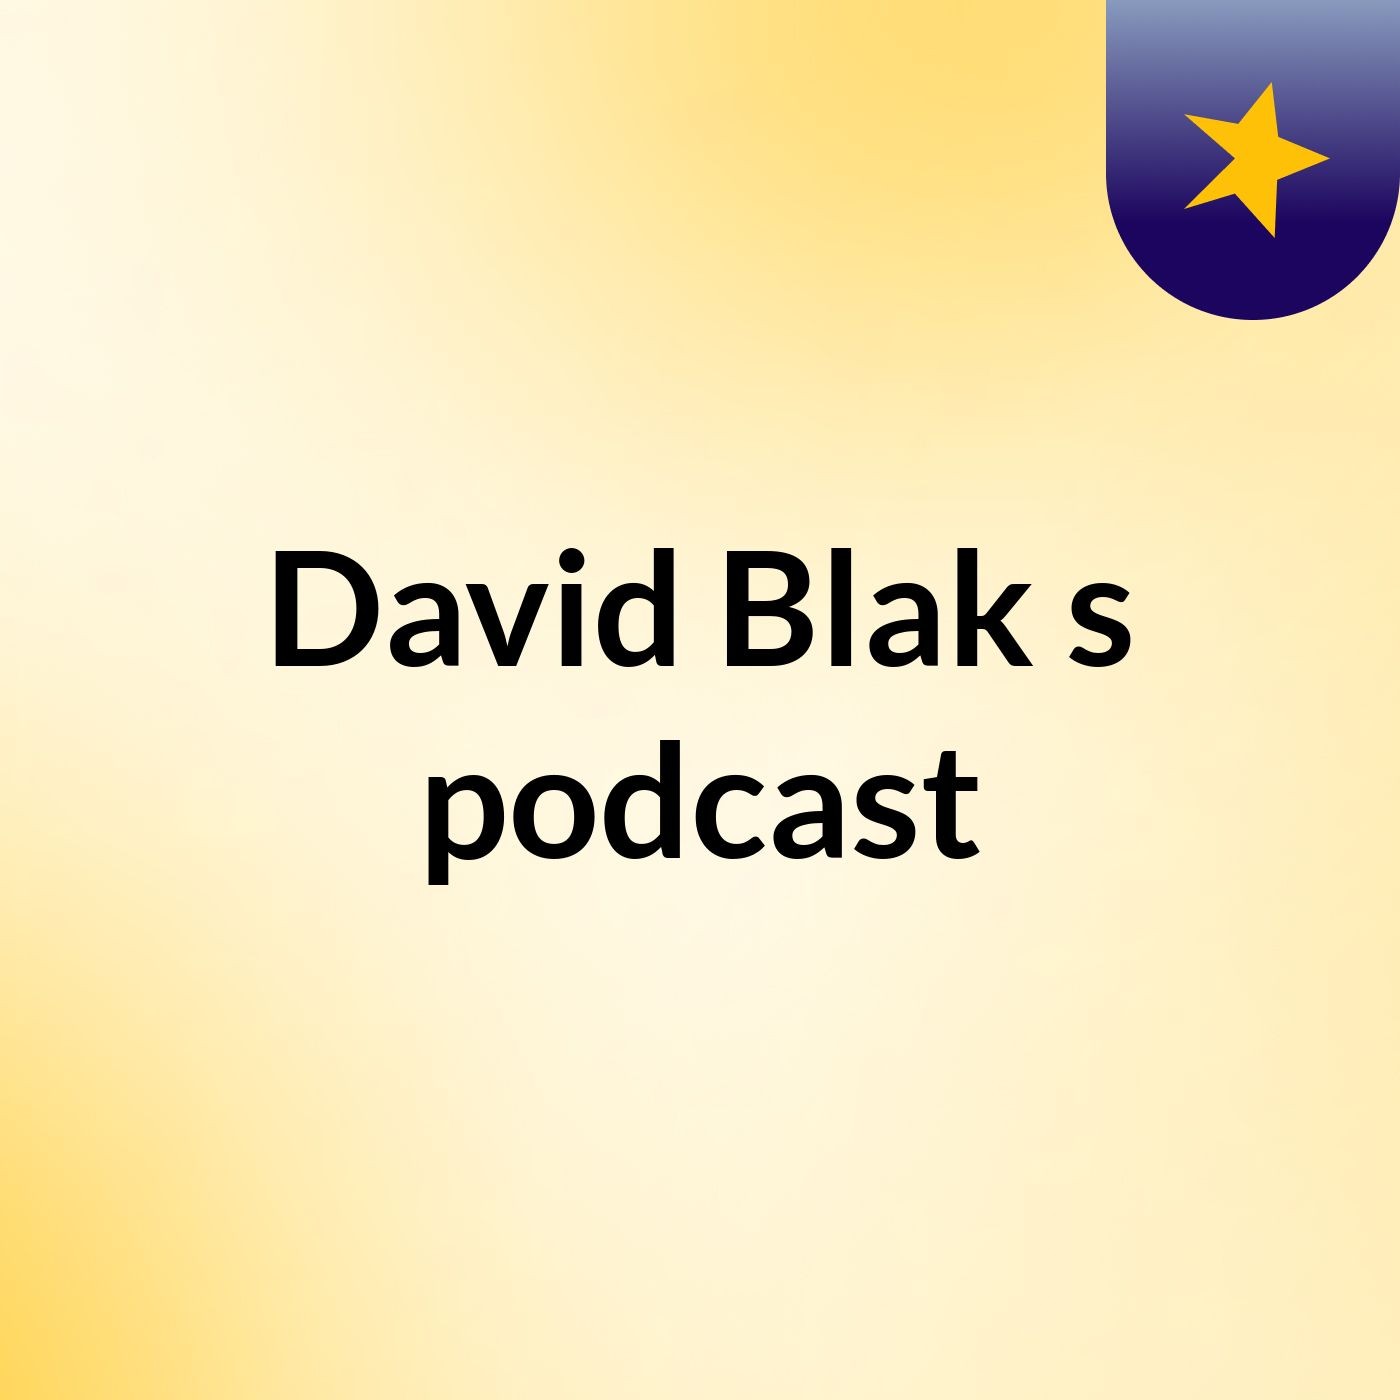 David Blak's podcast